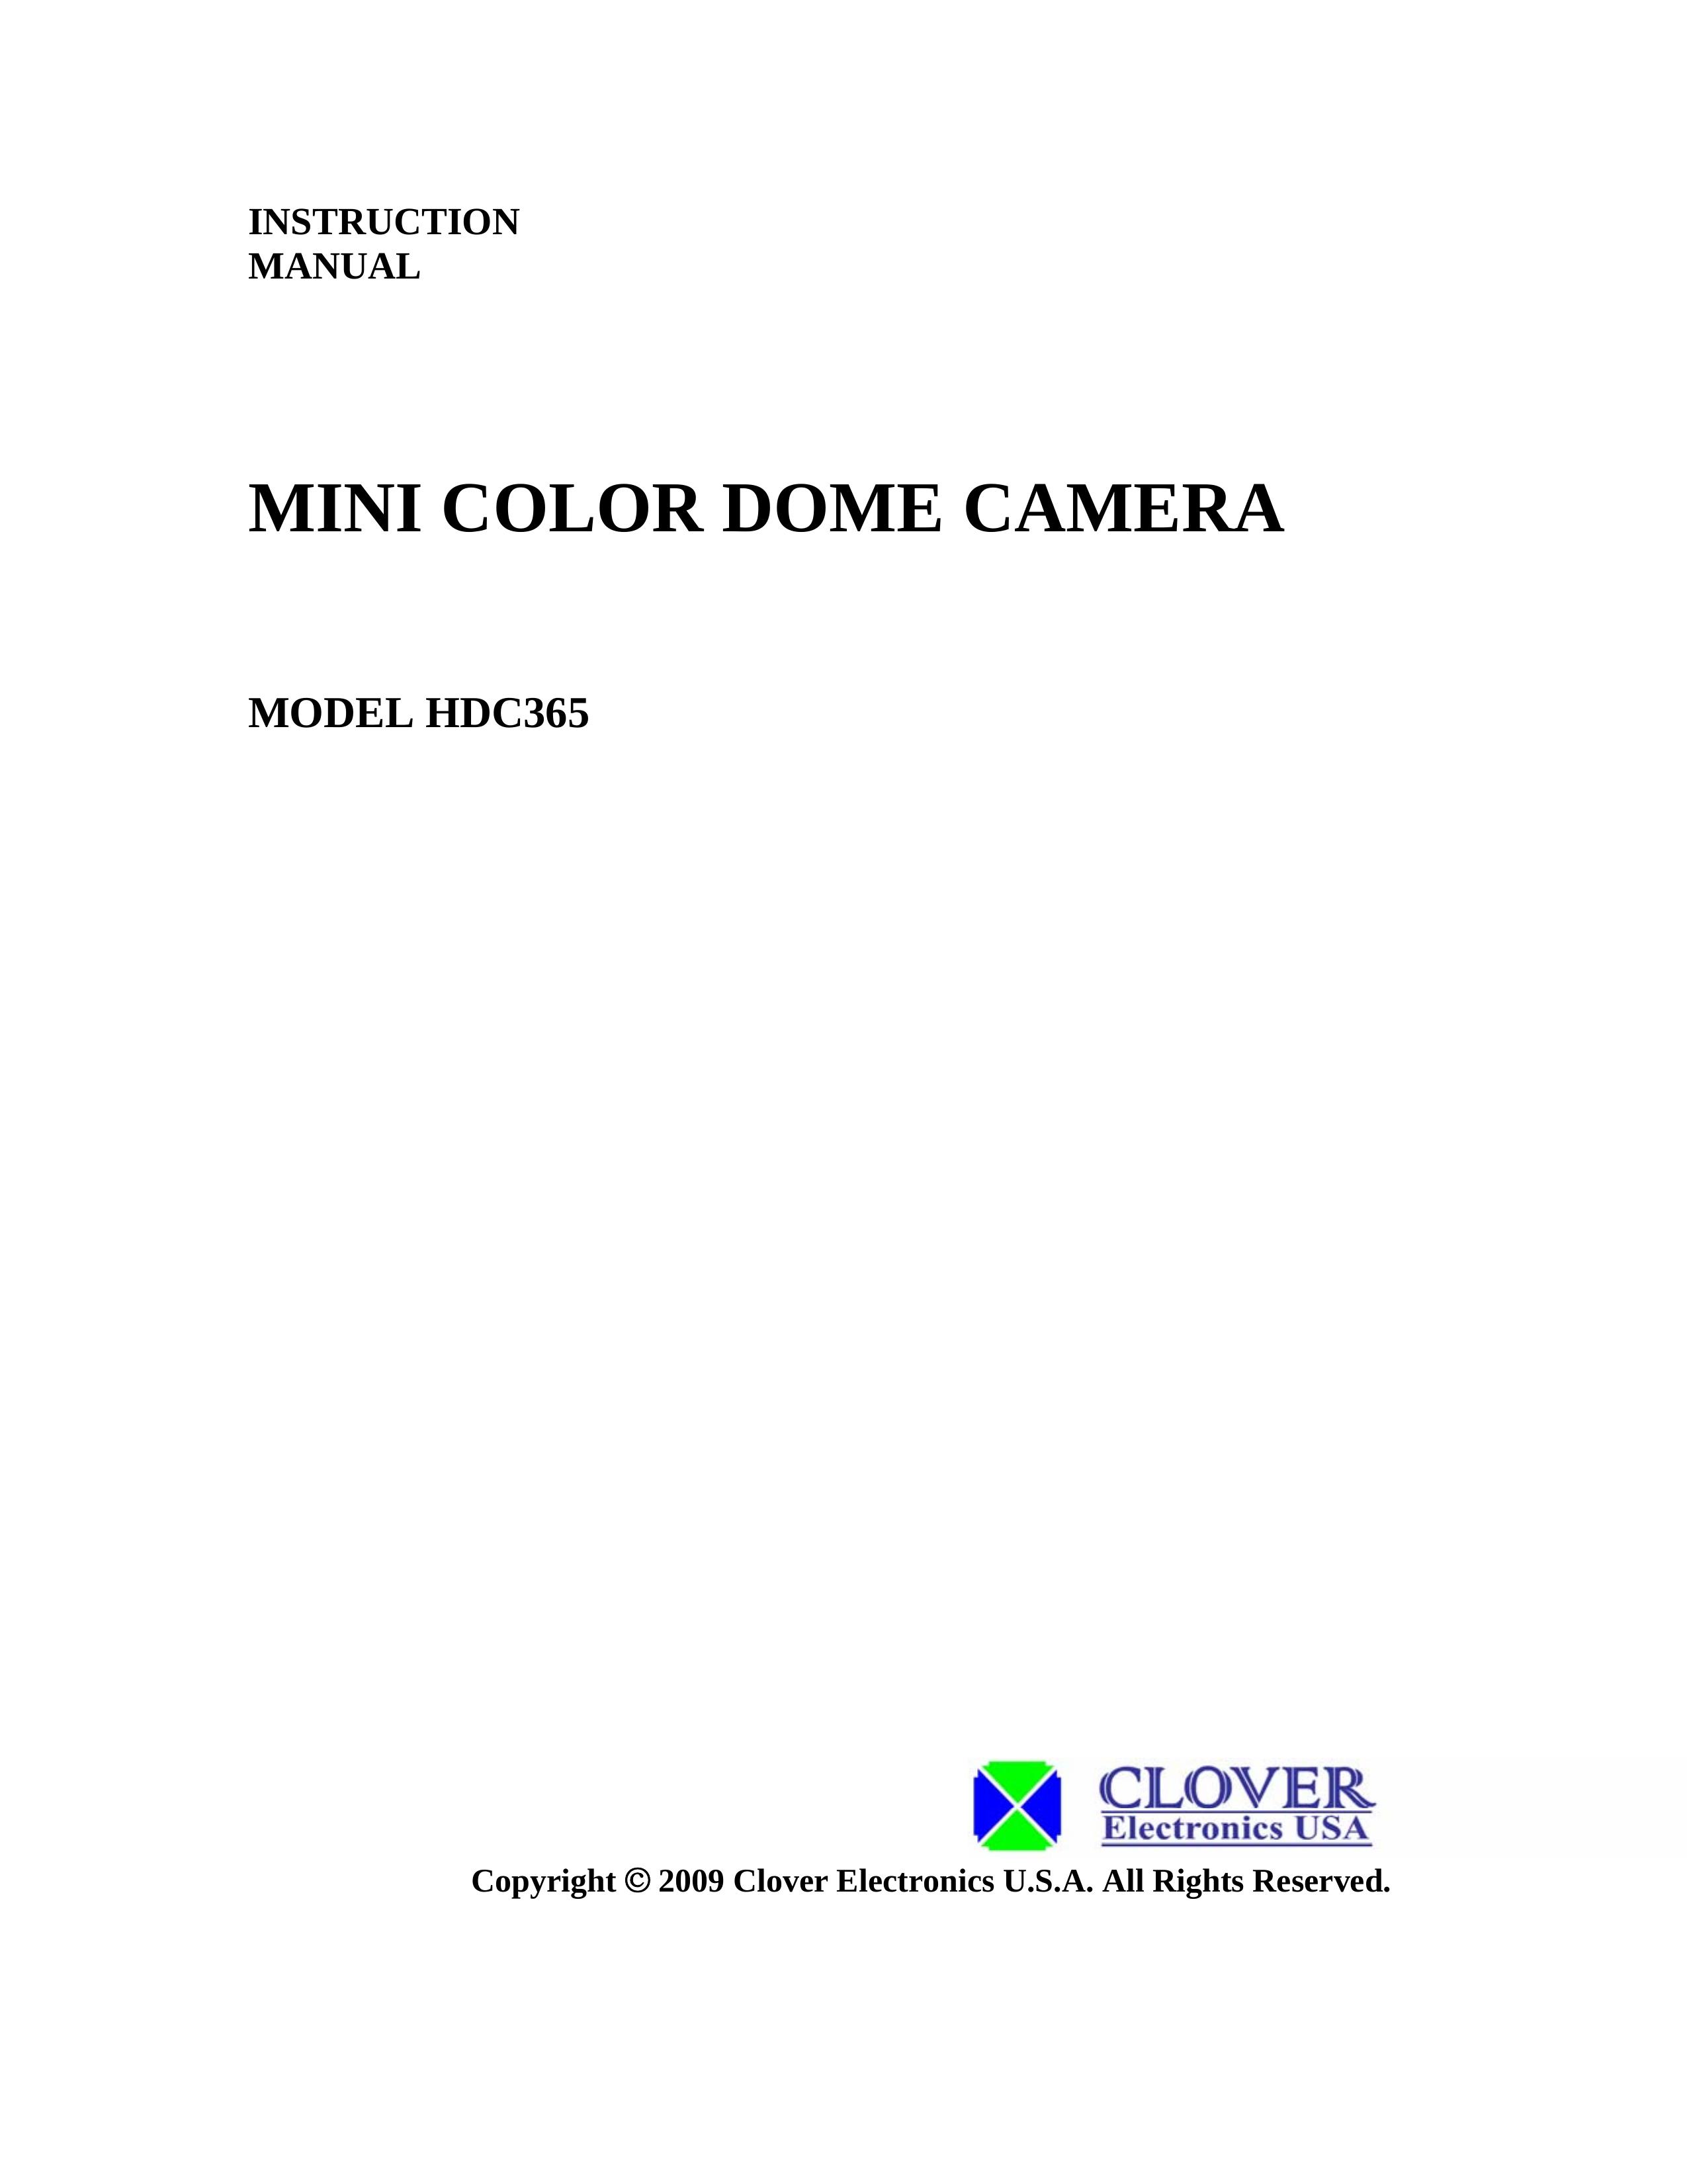 Clover Electronics HDC365 Security Camera User Manual